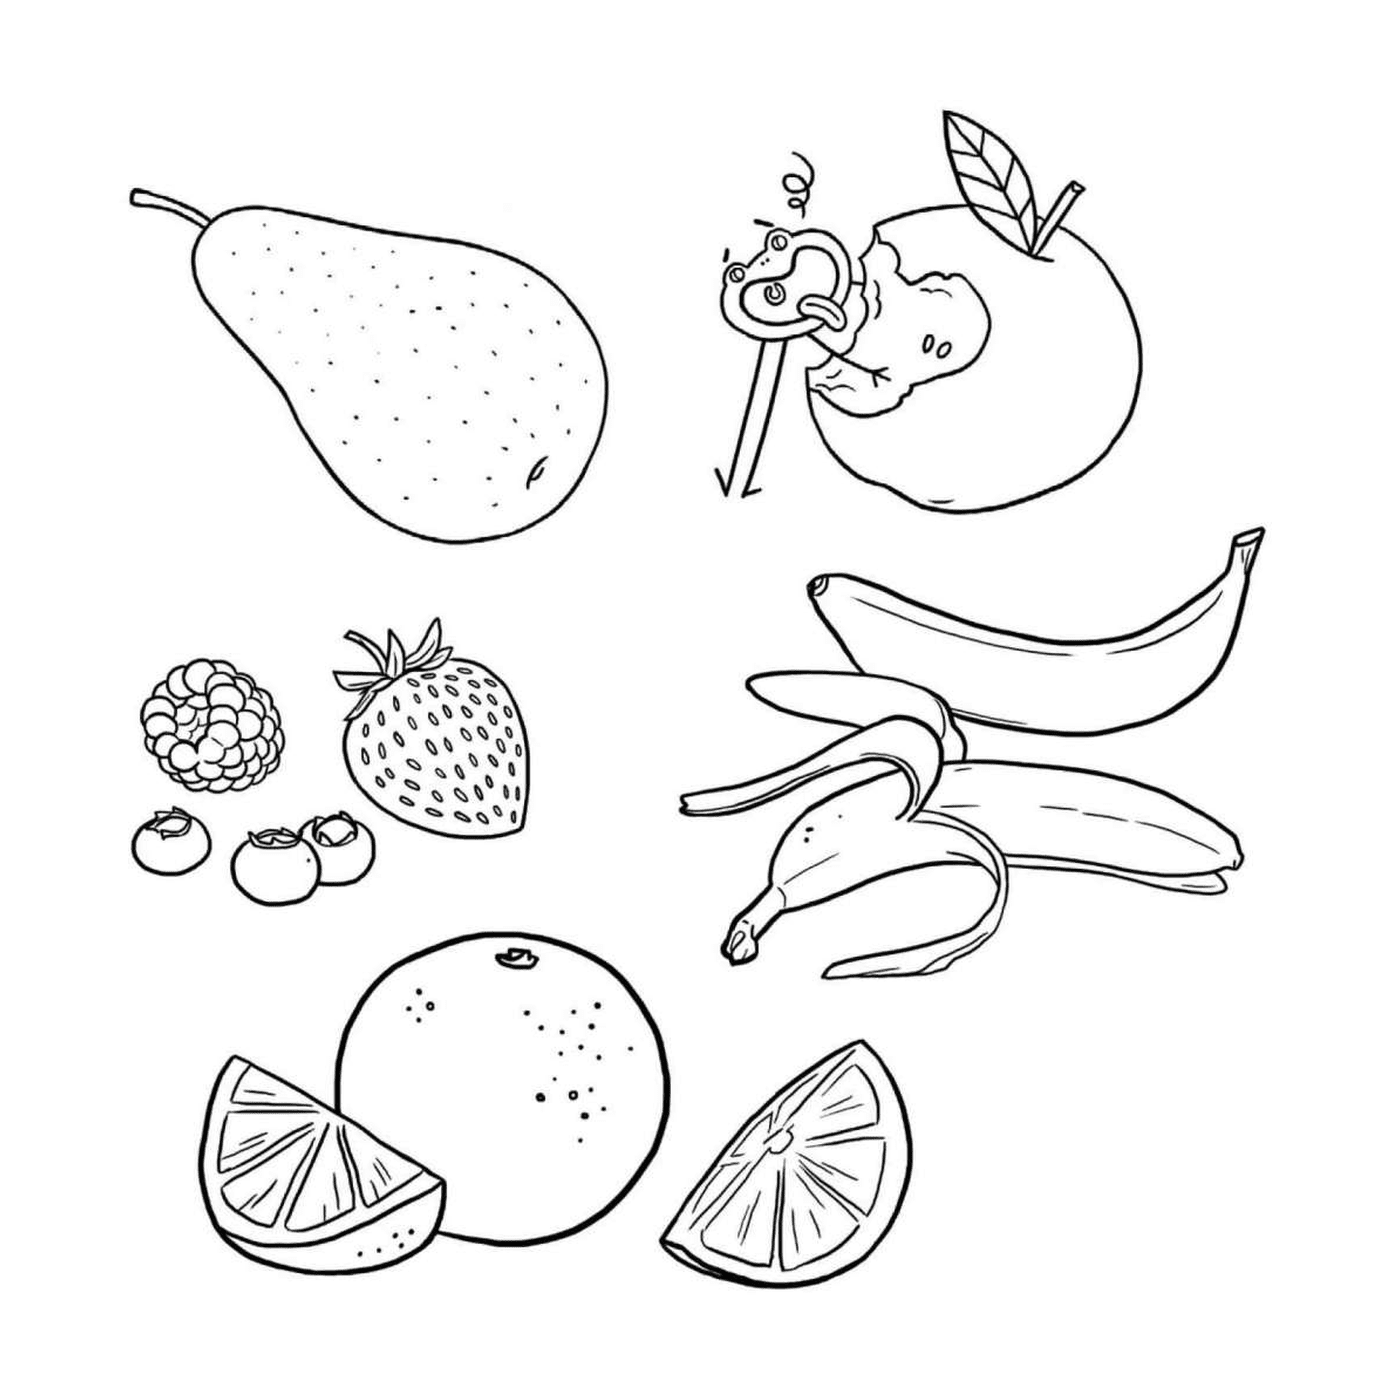  Dieta equilibrata con frutta 